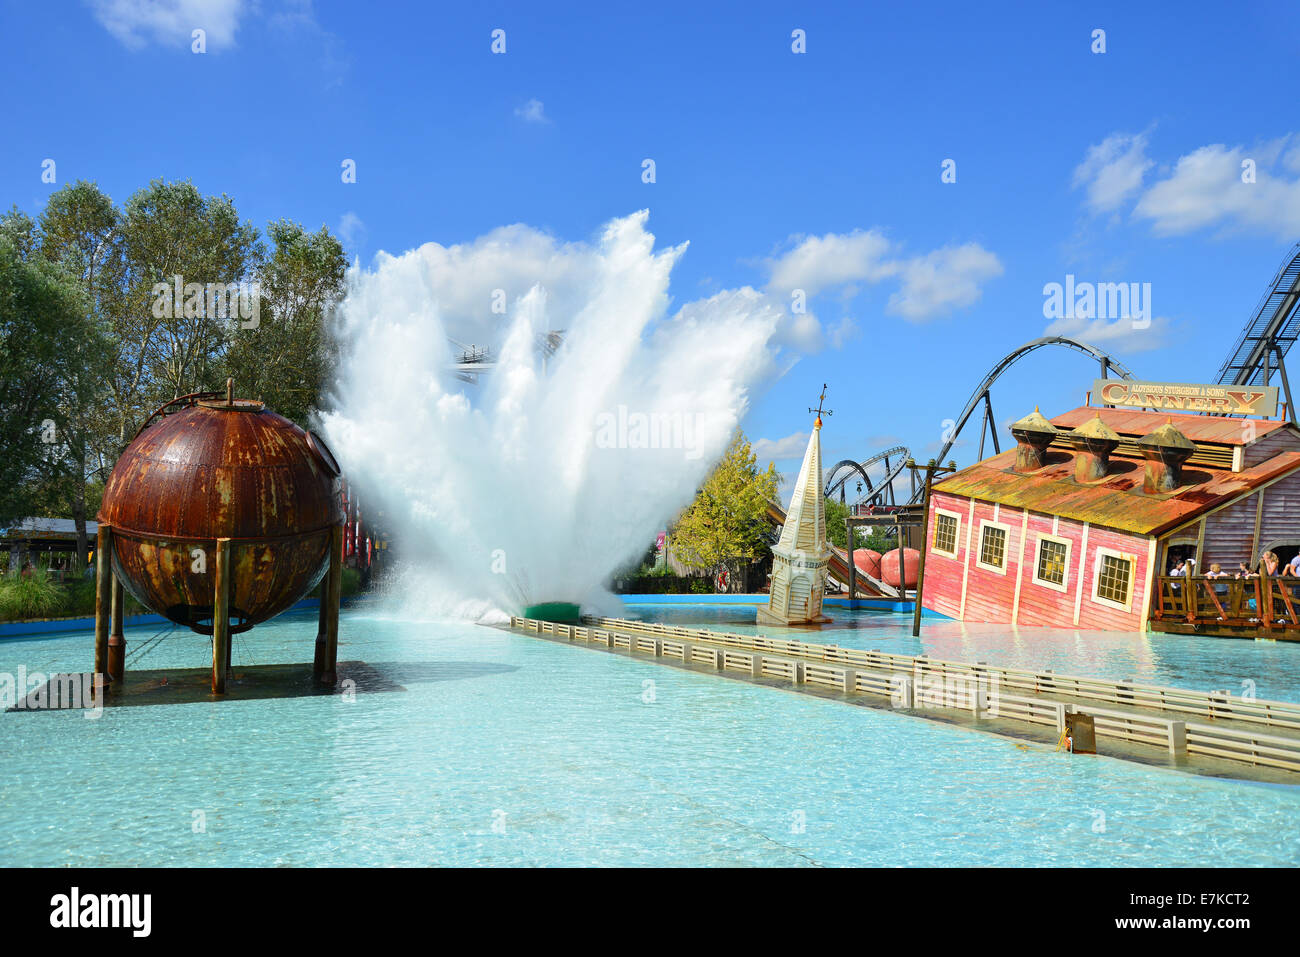 Onda di marea acqua ride, Thorpe Park Theme Park, Chertsey, Surrey, England, Regno Unito Foto Stock